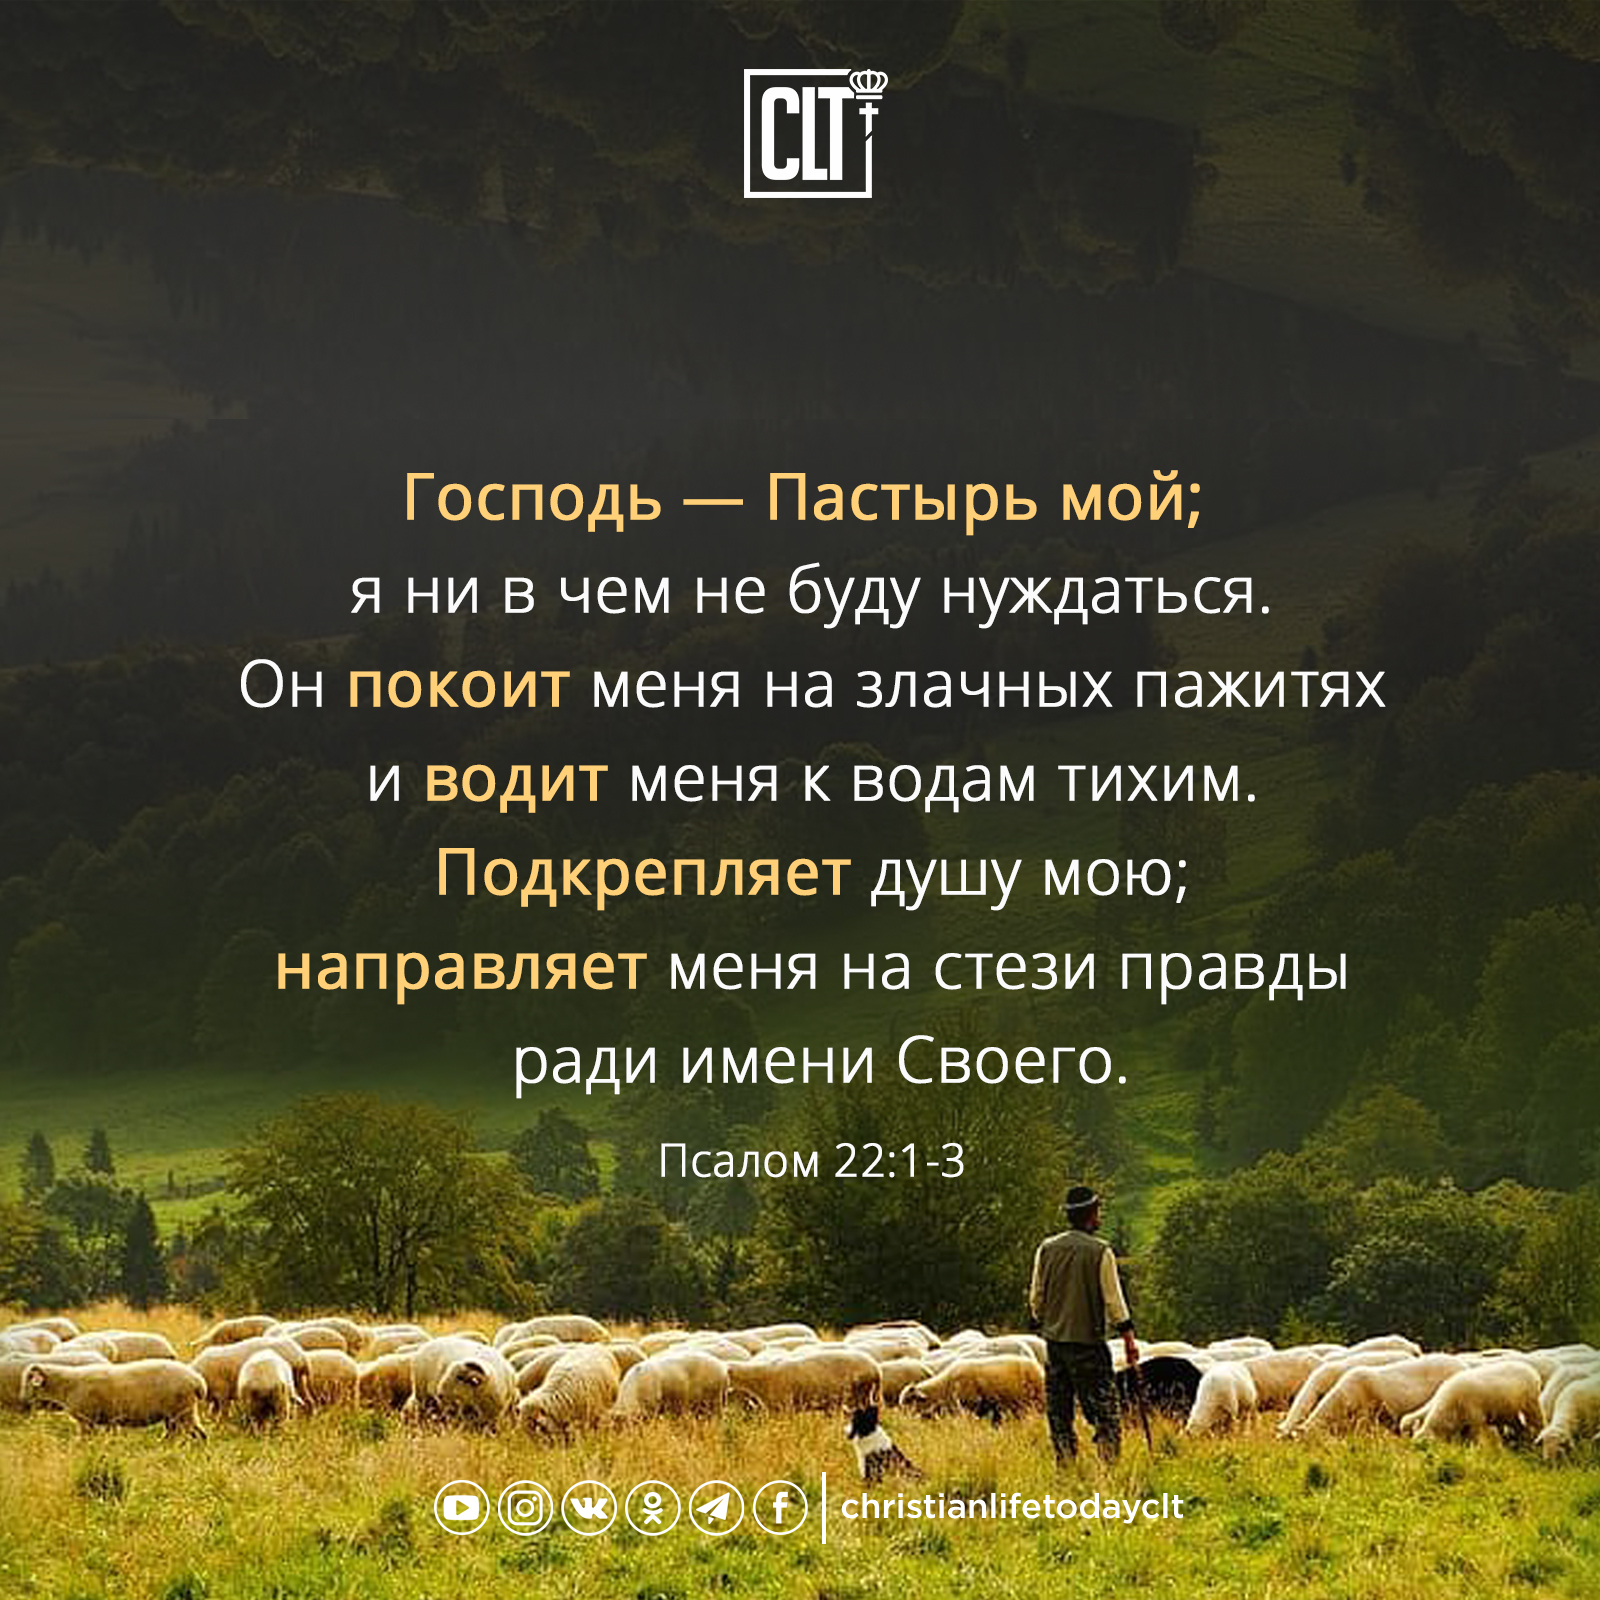 Пастырь псалом. Господь Пастырь мой. Псалом Господь Пастырь. Господь Пастырь. Библия Господь Пастырь мой.